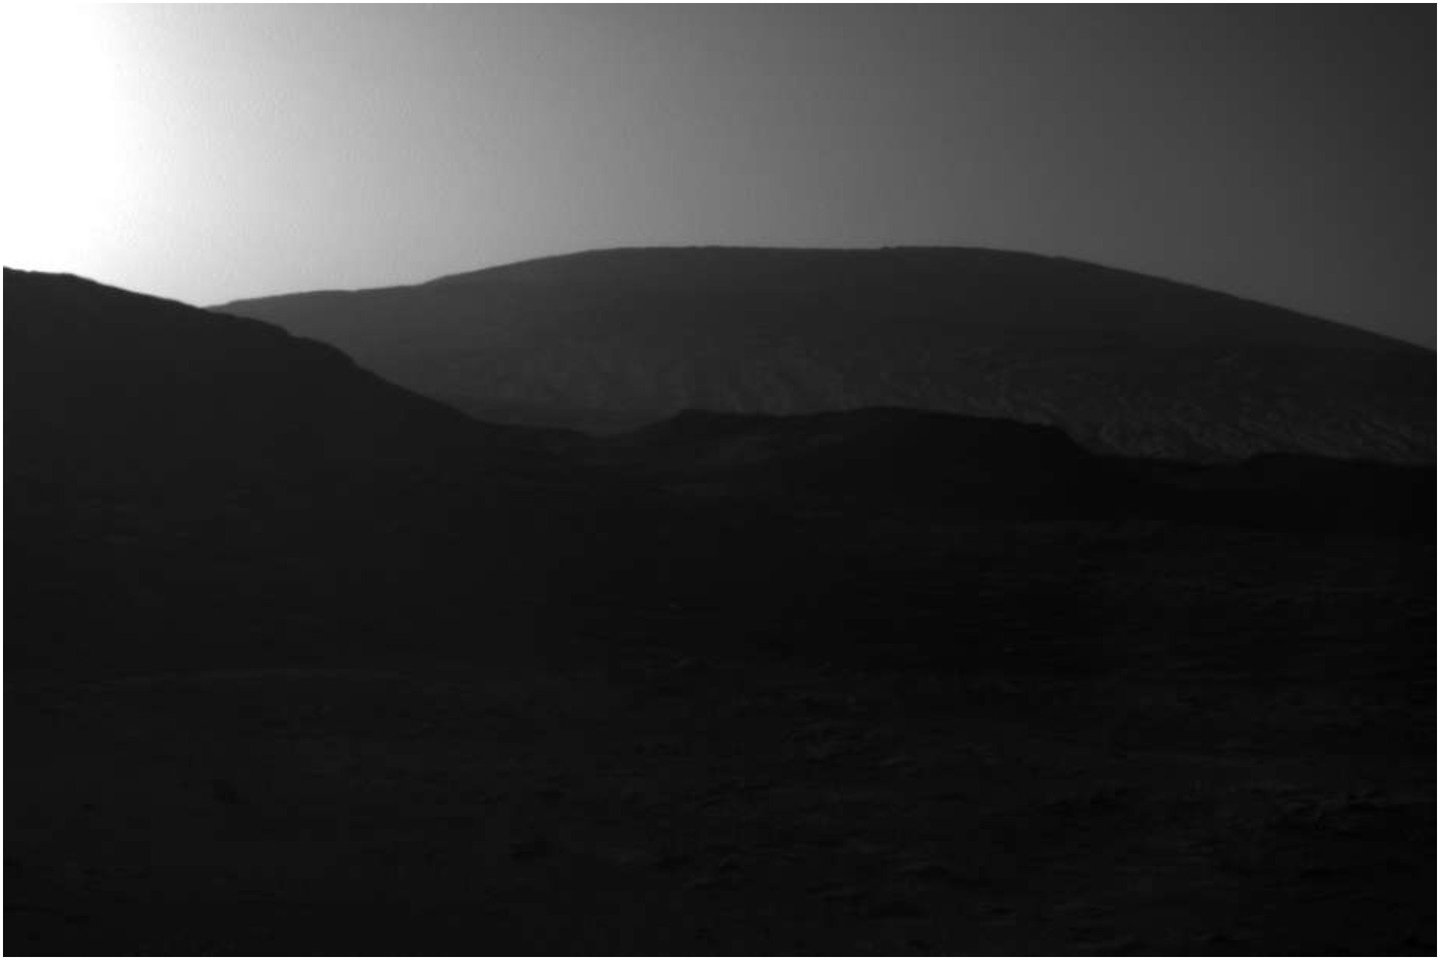 Šią nuotrauką padarė NASA marsaeigis „Curiosity“, kuris jau ilgą laiką tyrinėja Raudonosios planetos paviršių ir ieško gyvybės pėdsakų.   <br>NASA nuotr.  